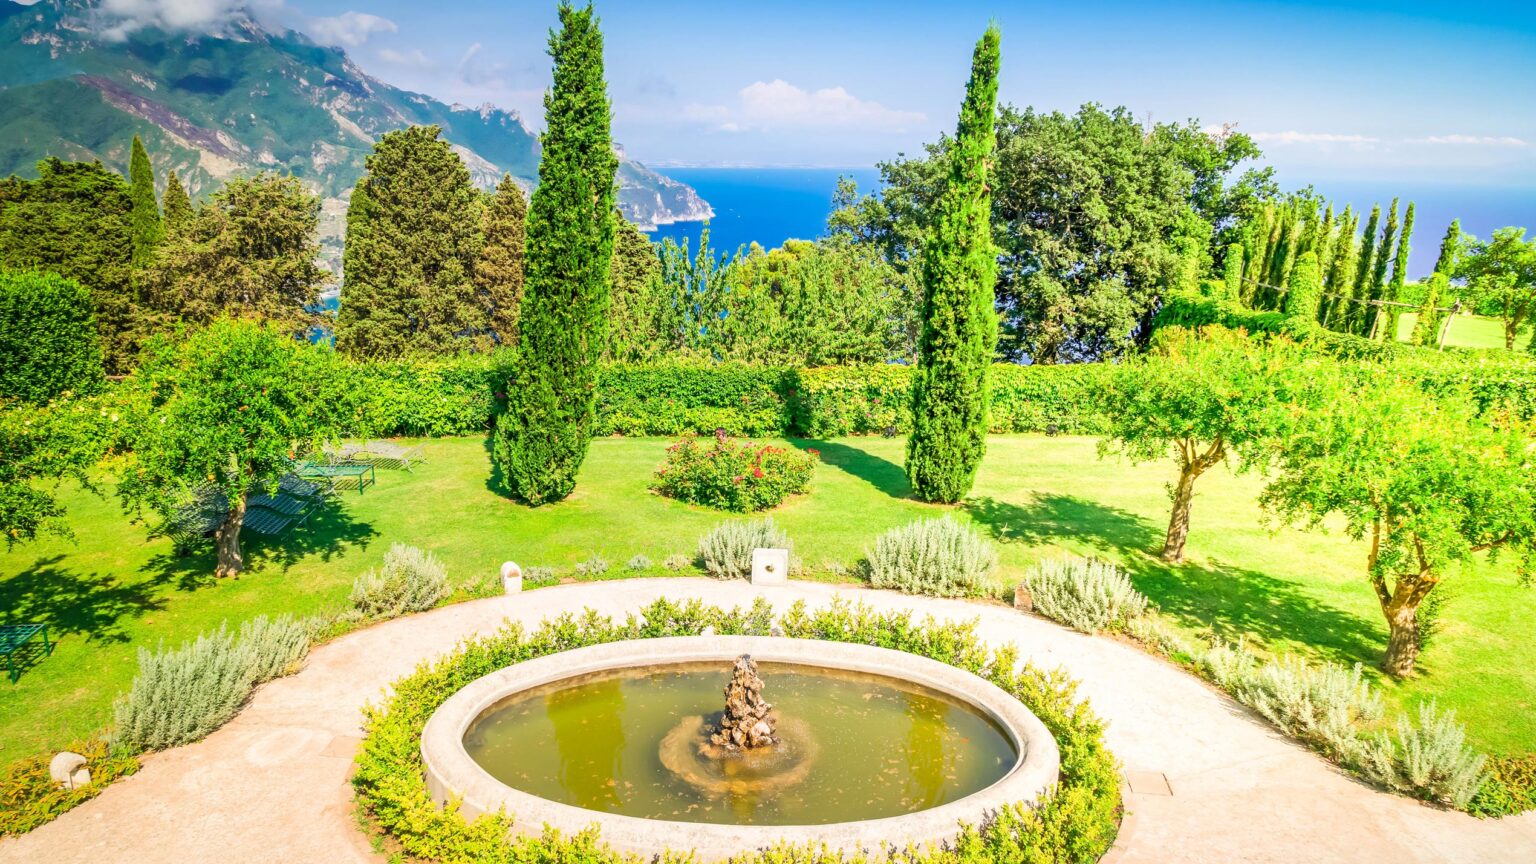 Ornamental Garden, Ravello village, Amalfi coast, Italy